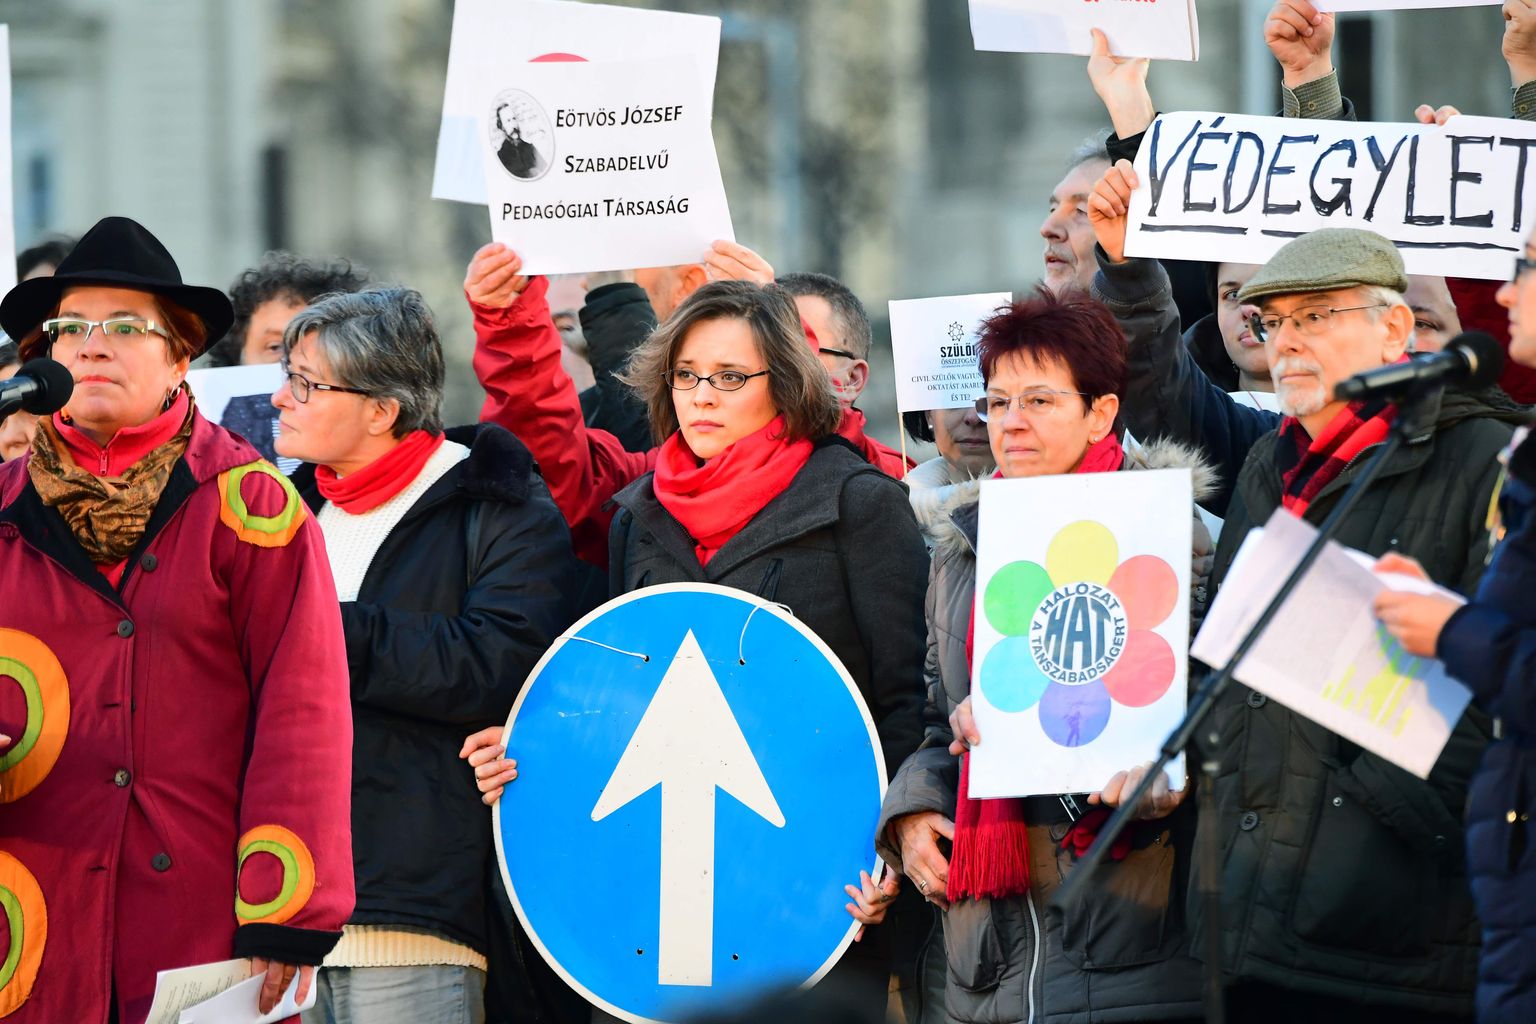 Kodanikeühenduste aktivistid 5. veebruaril Ungari pealinnas Budapestis parlamendi ees protestimas.